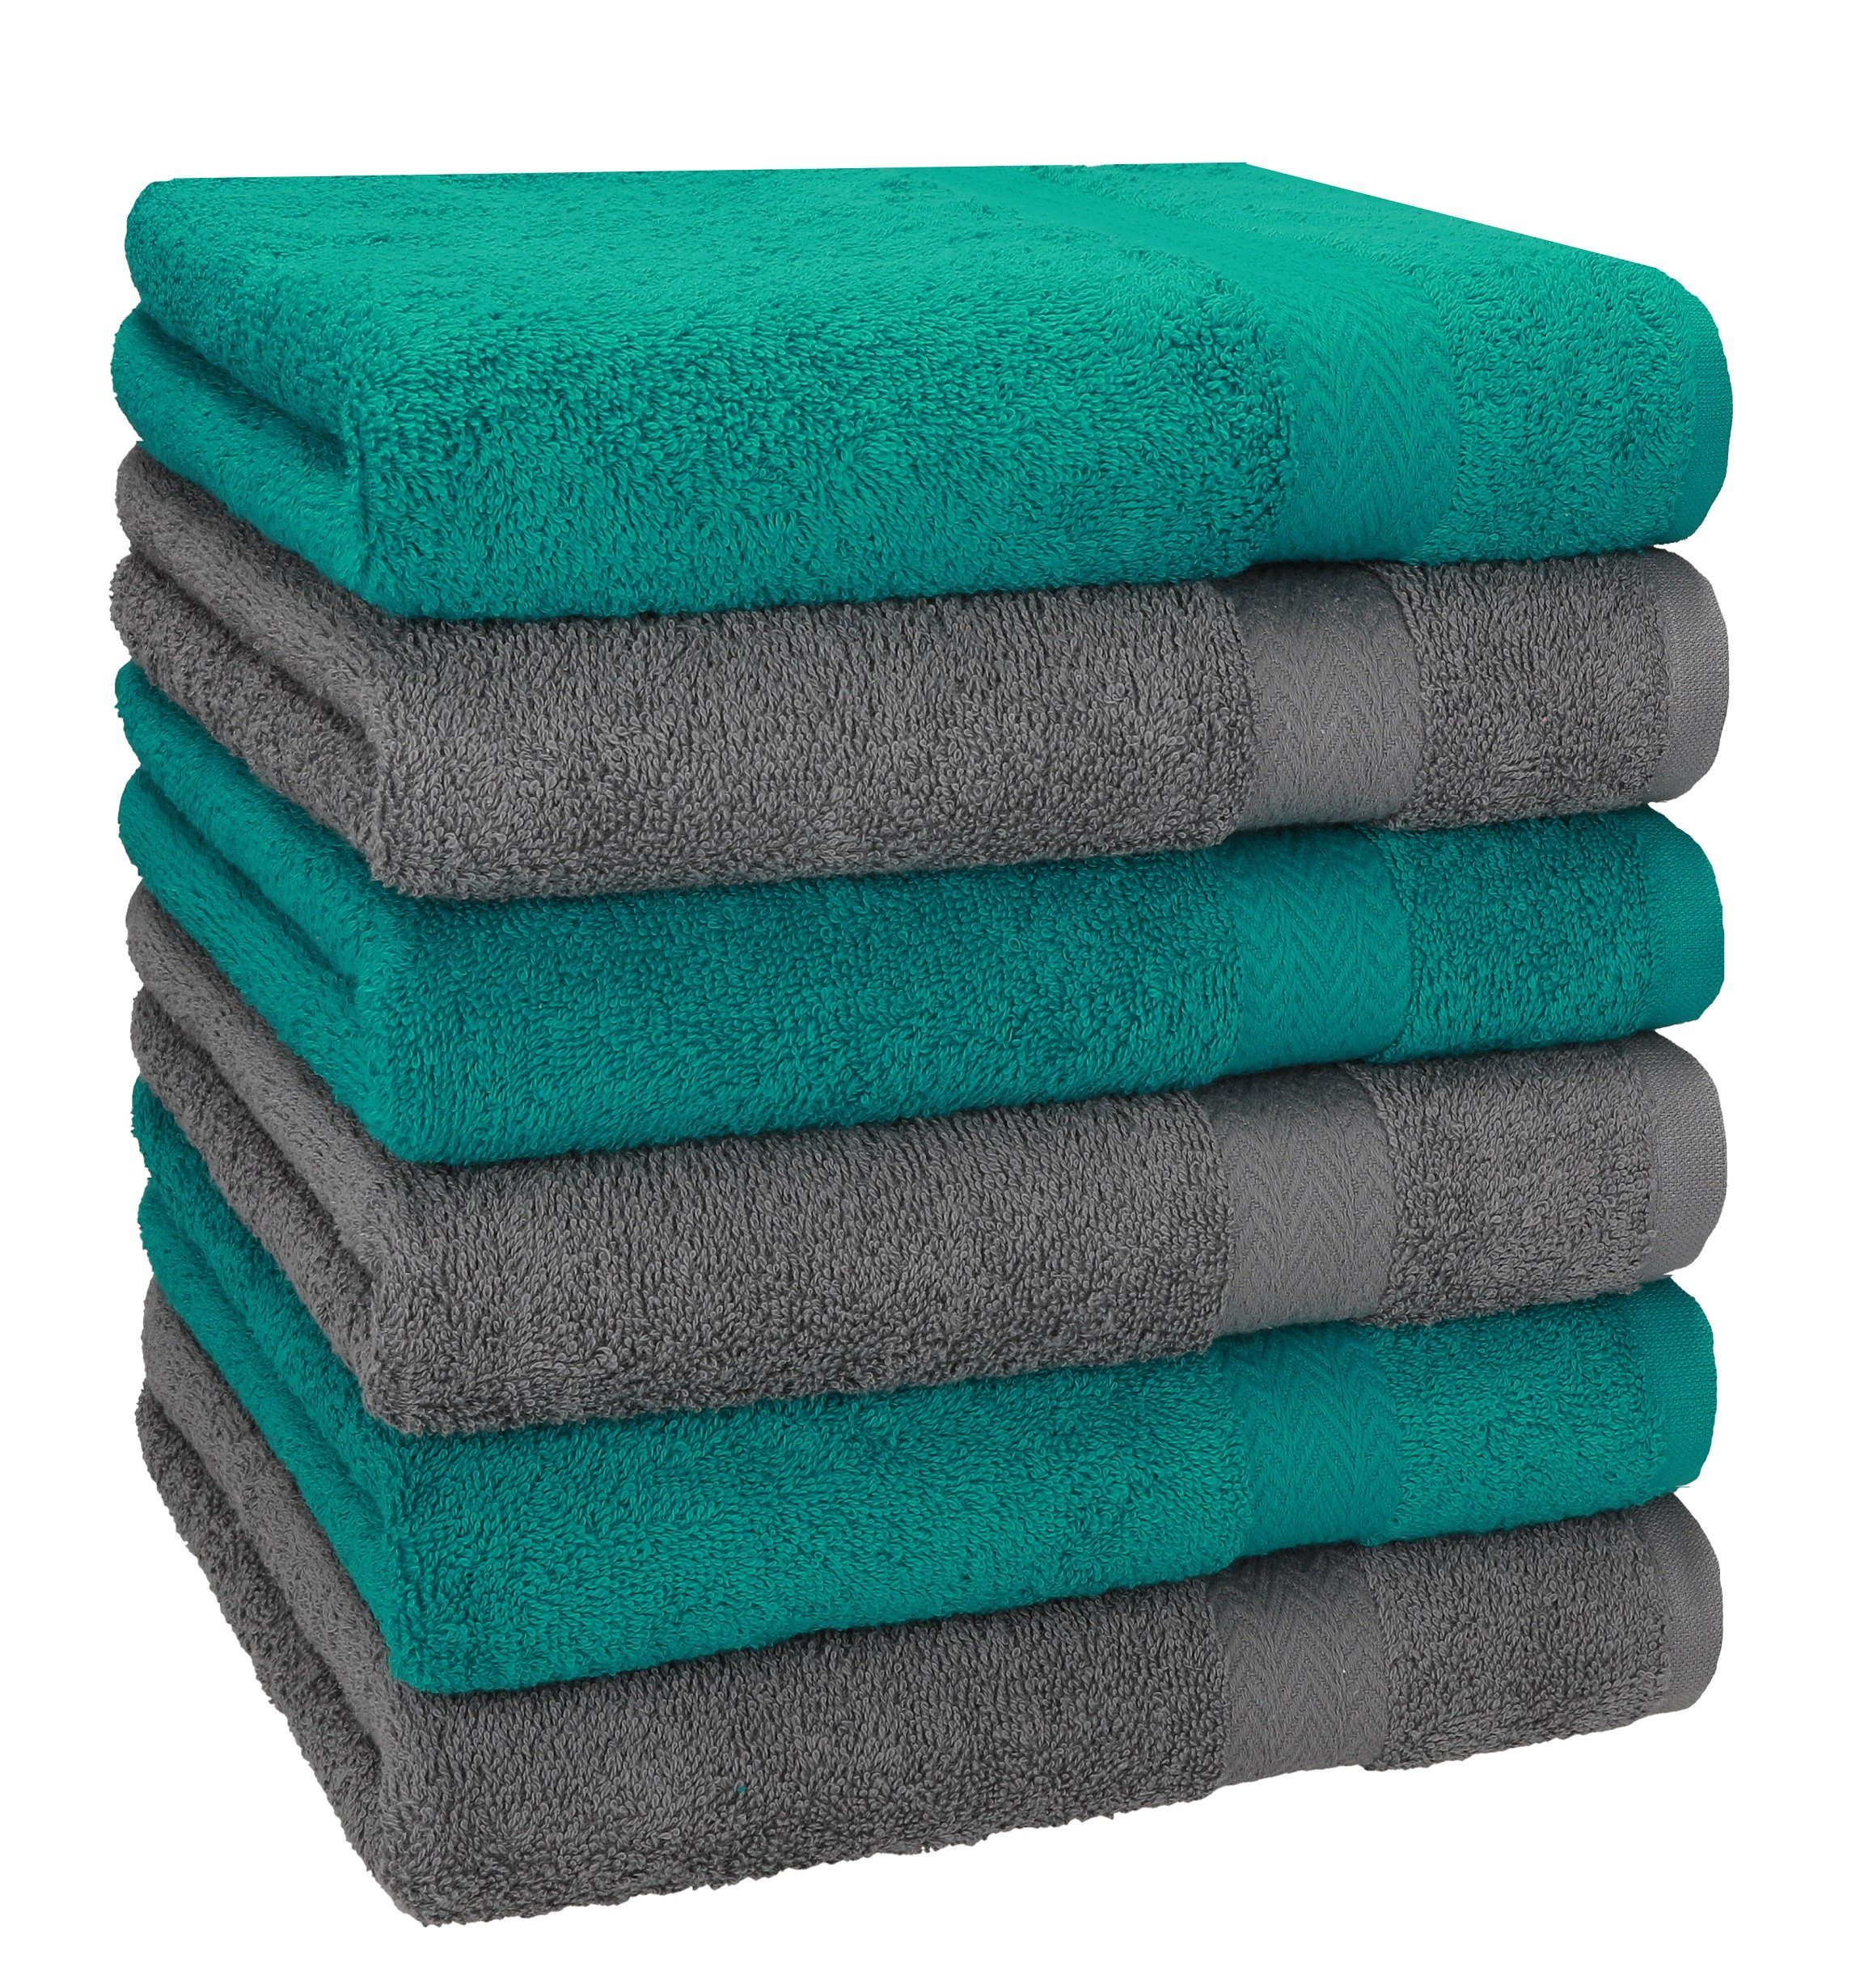 Betz Handtücher 6 Stück Handtücher Größe 50 x 100 cm Premium Handtuch Set 100% Baumwolle Farbe smaragdgrün/anthrazit Grau, 100% Baumwolle (6-St)